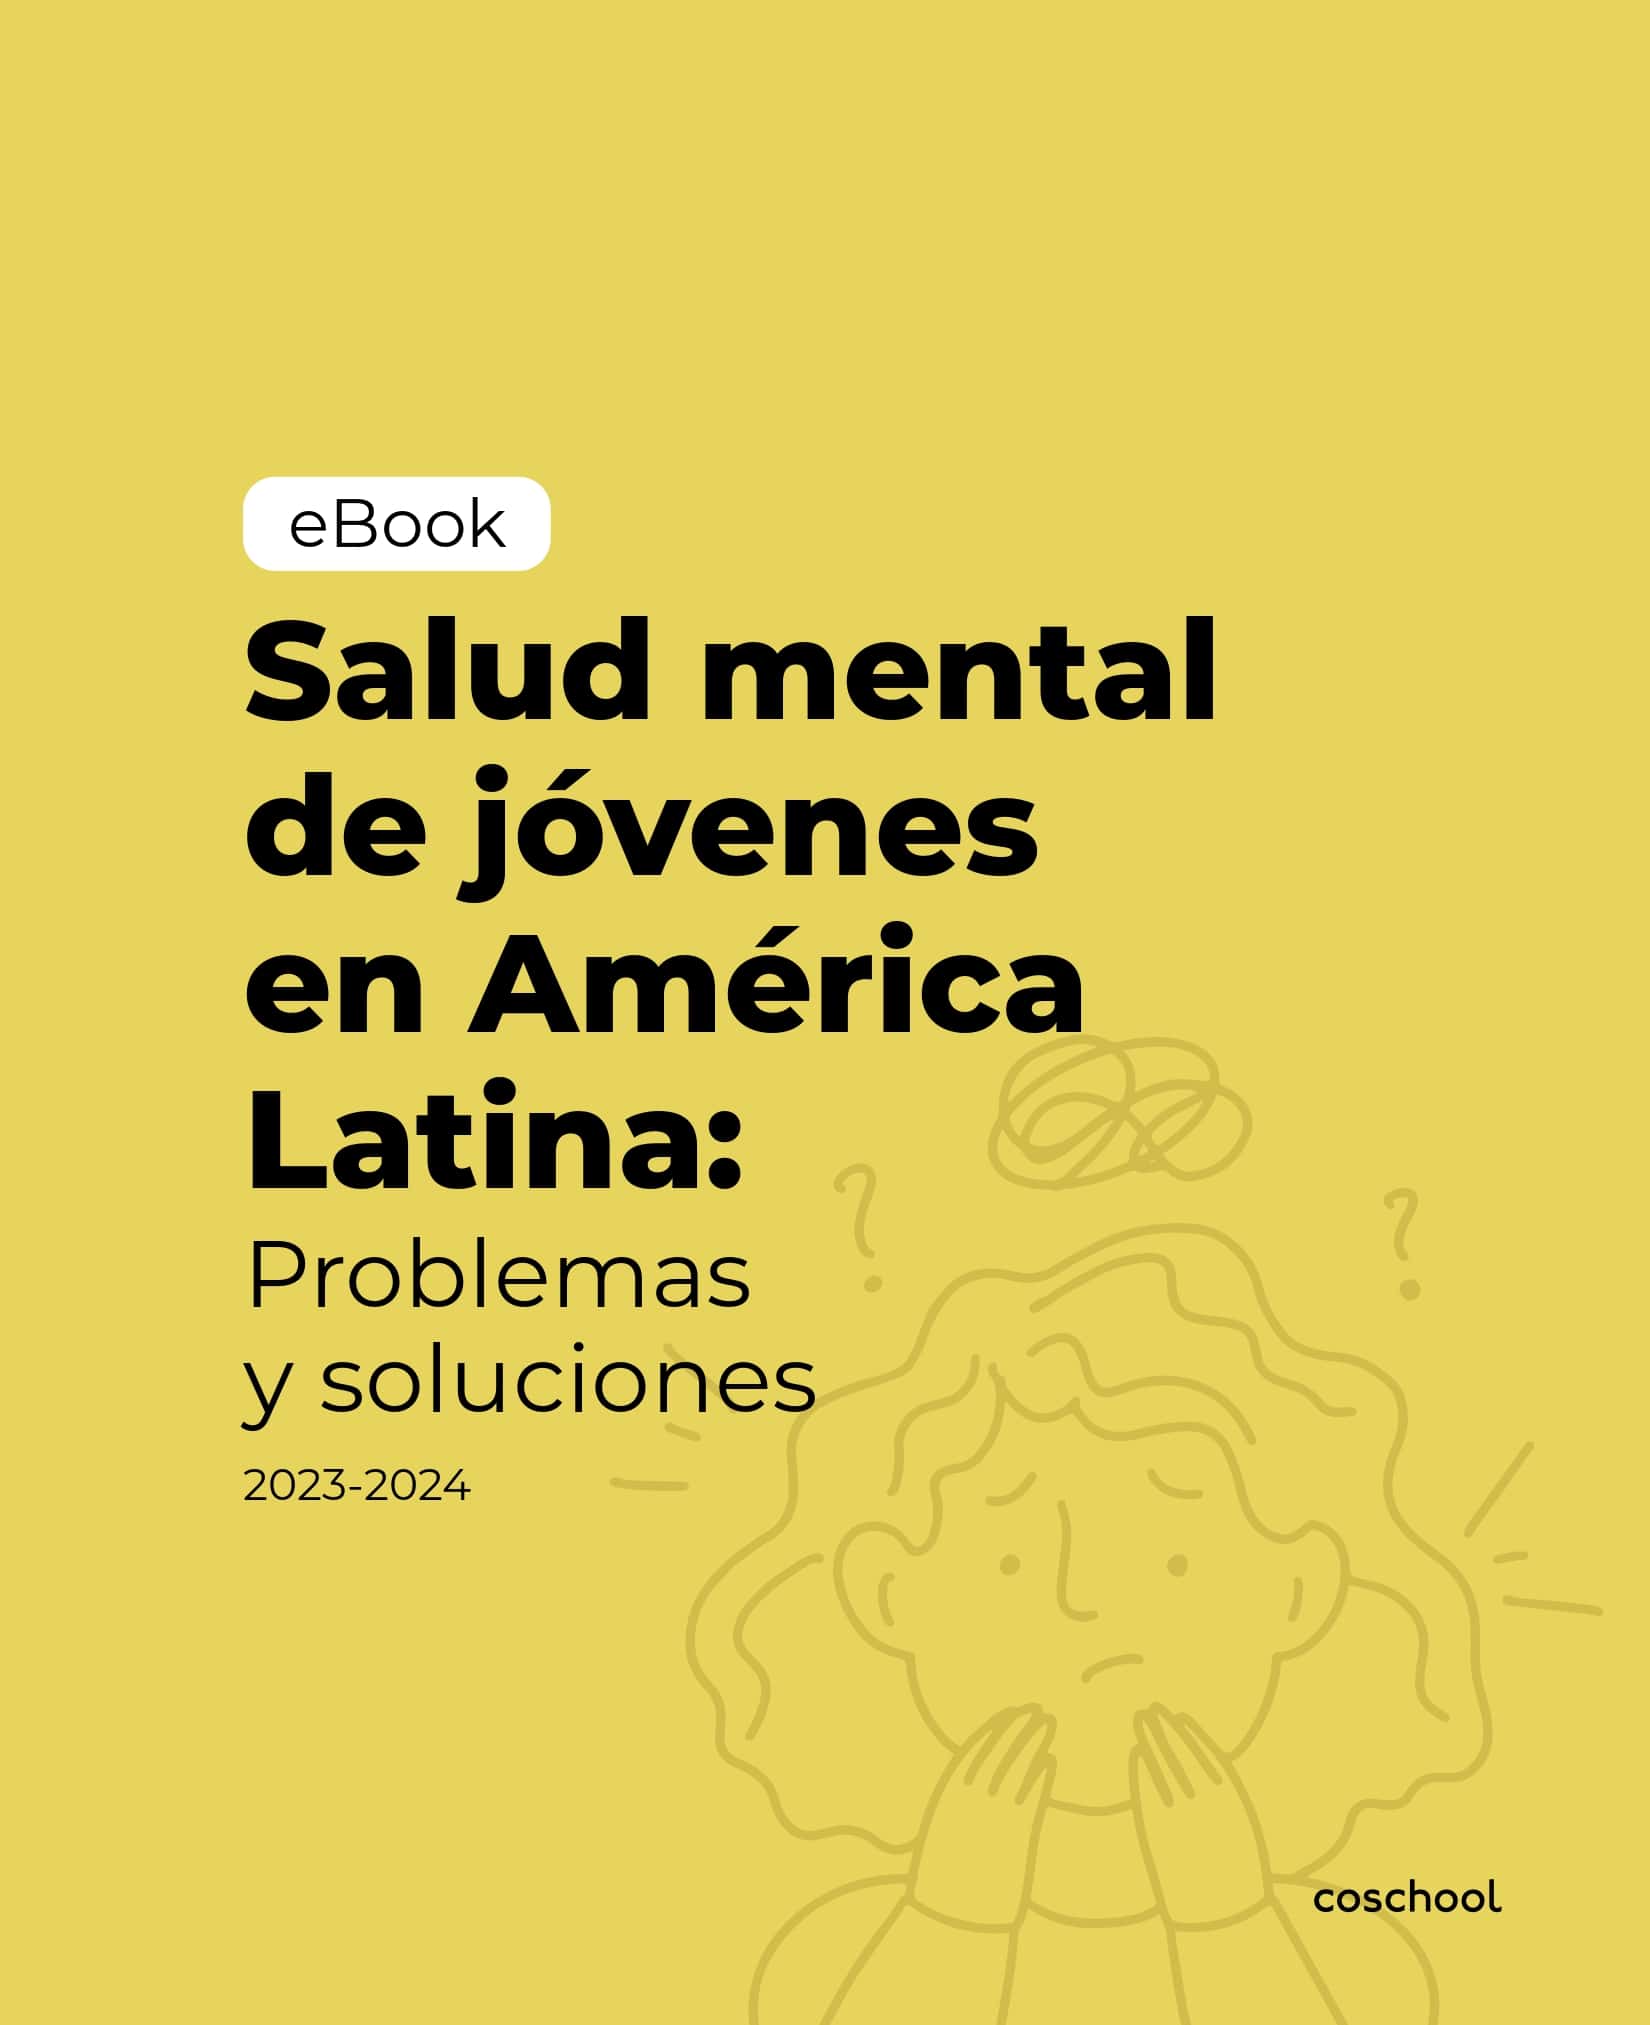 eBook_Salud mental jovenes (1)_pages-to-jpg-0001